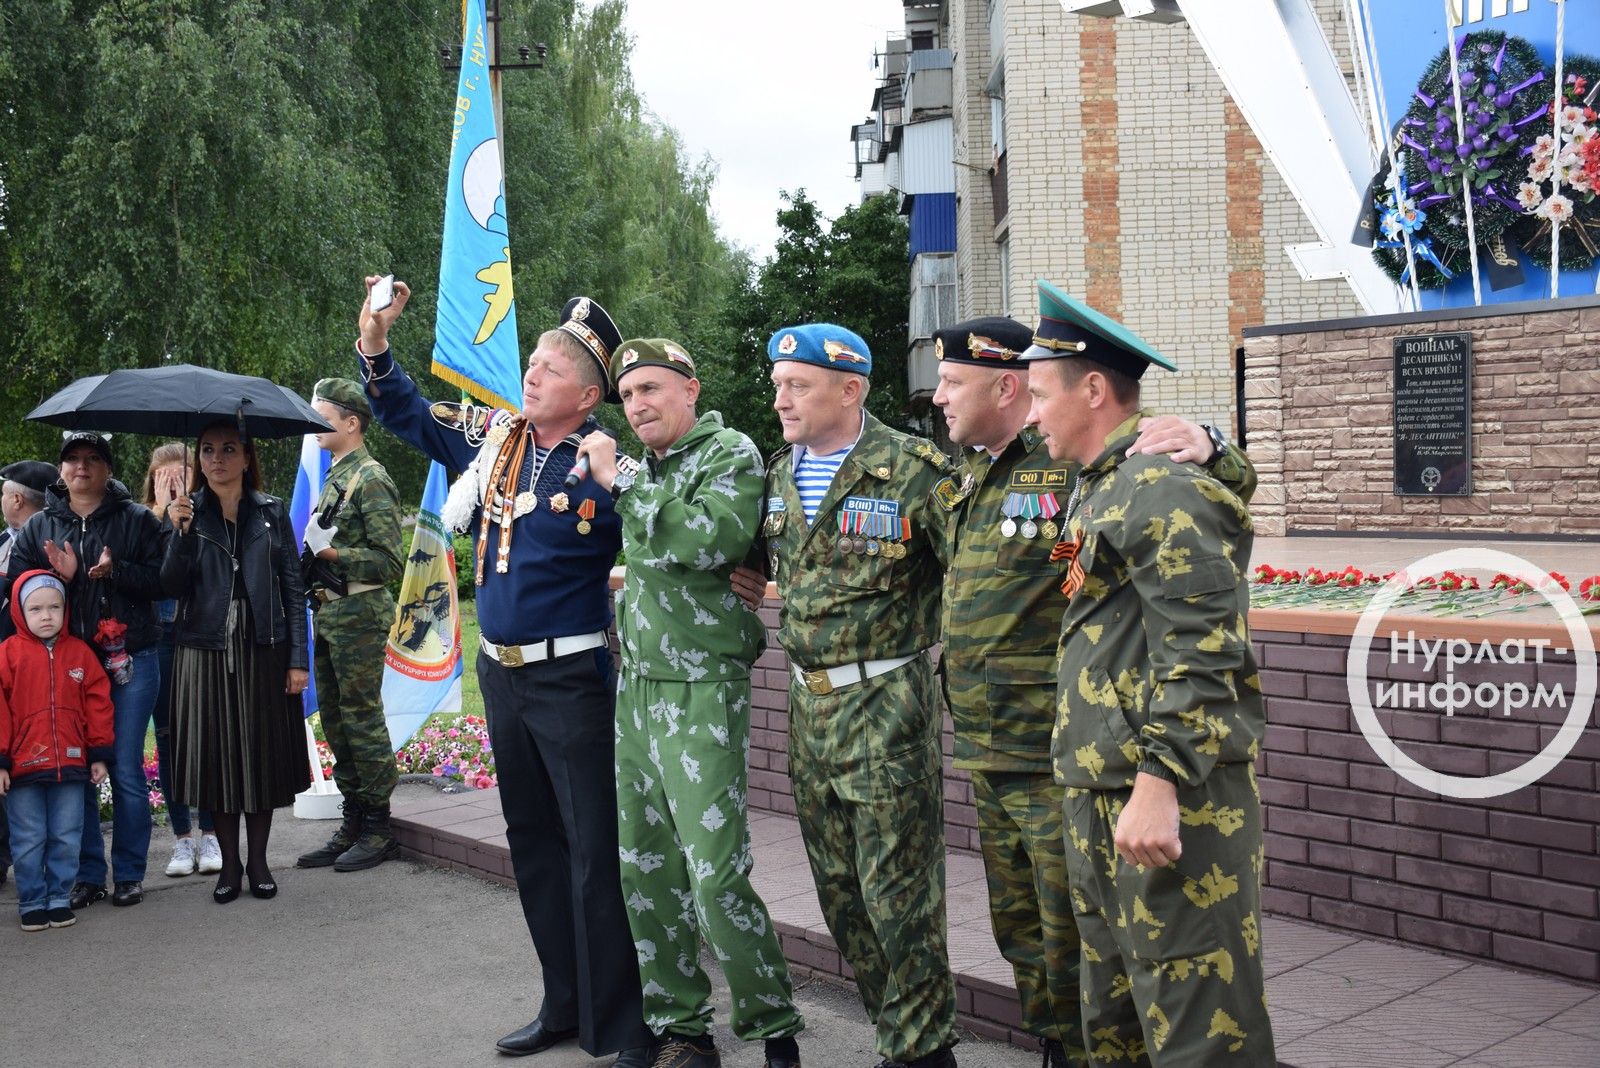 Нурлатские десантники начали подготовку к 90-летию воздушно-десантных войск